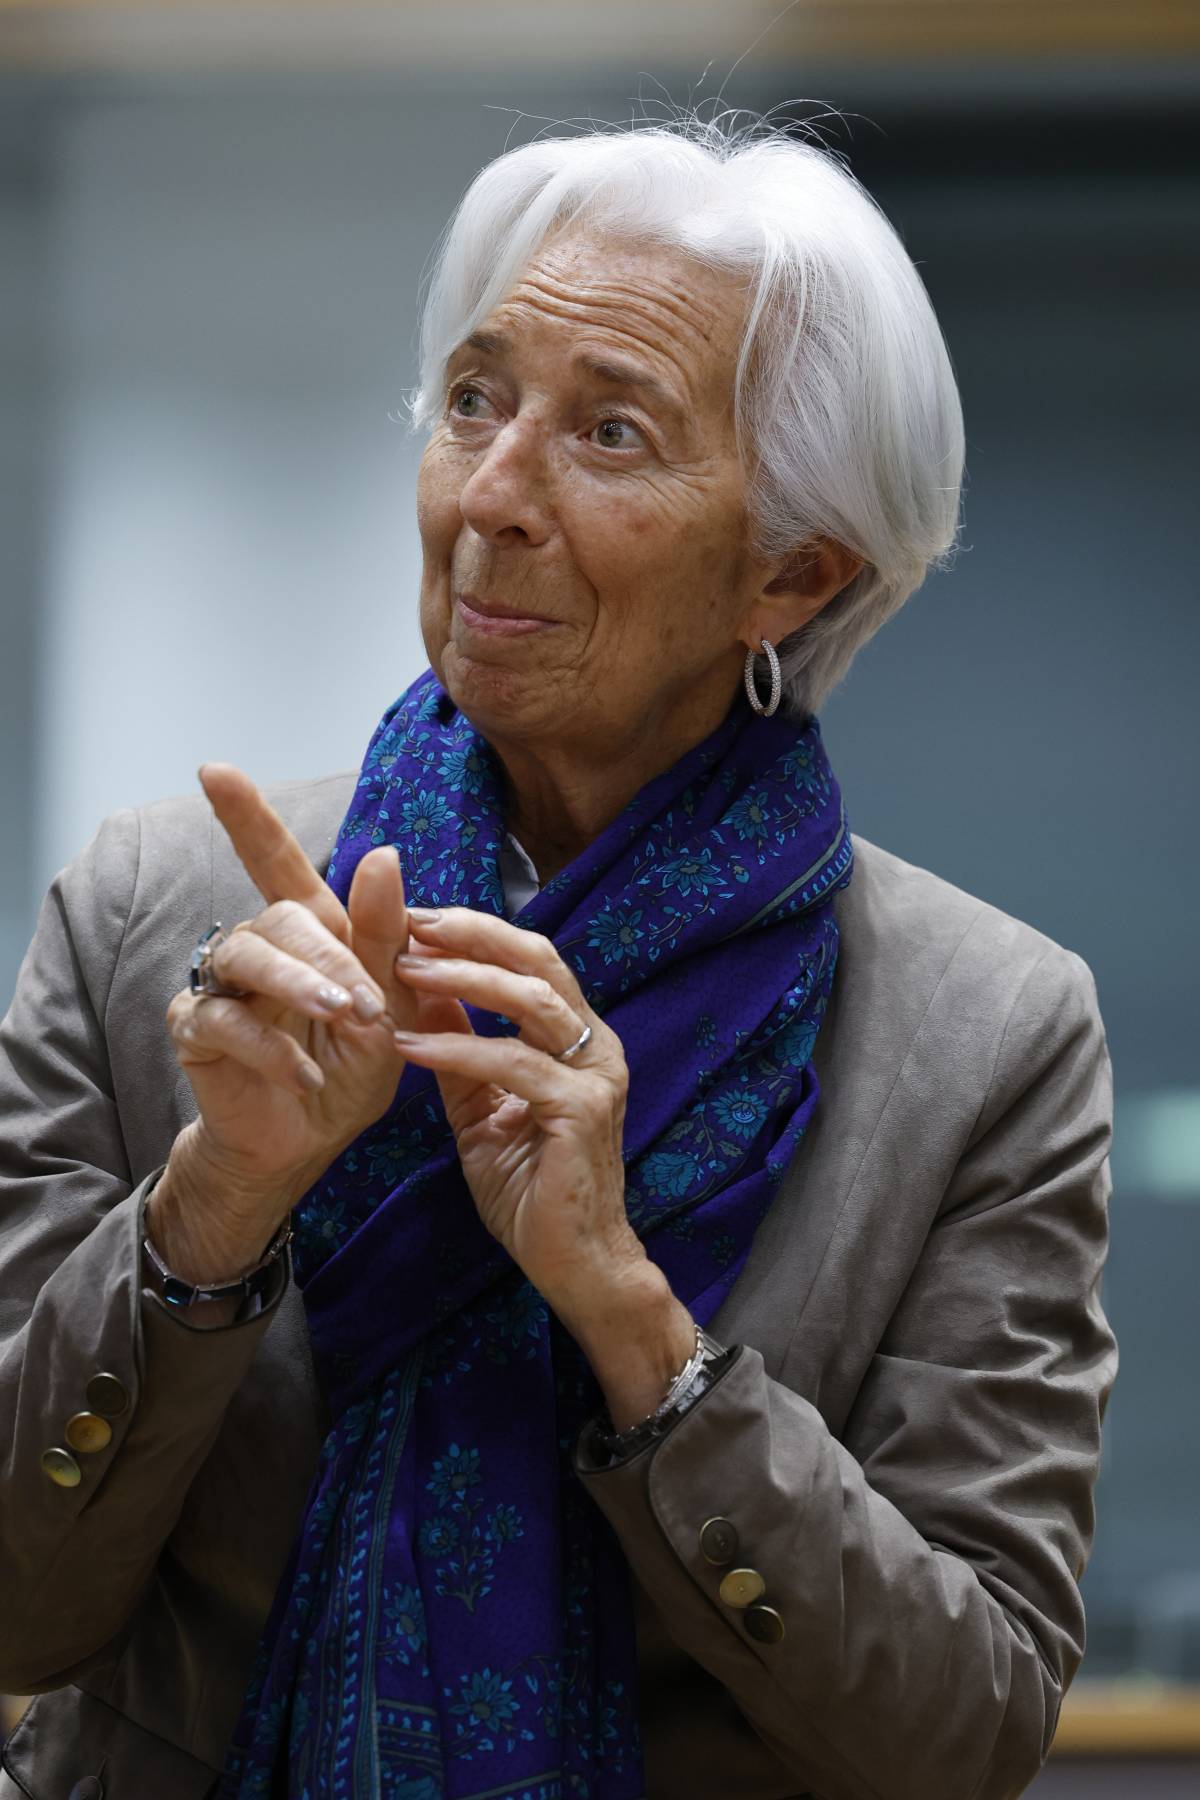 Da Davos falchi alla riscossa. Il catenaccio di Lagarde & C. "Tassi? Tagliarli è prematuro"